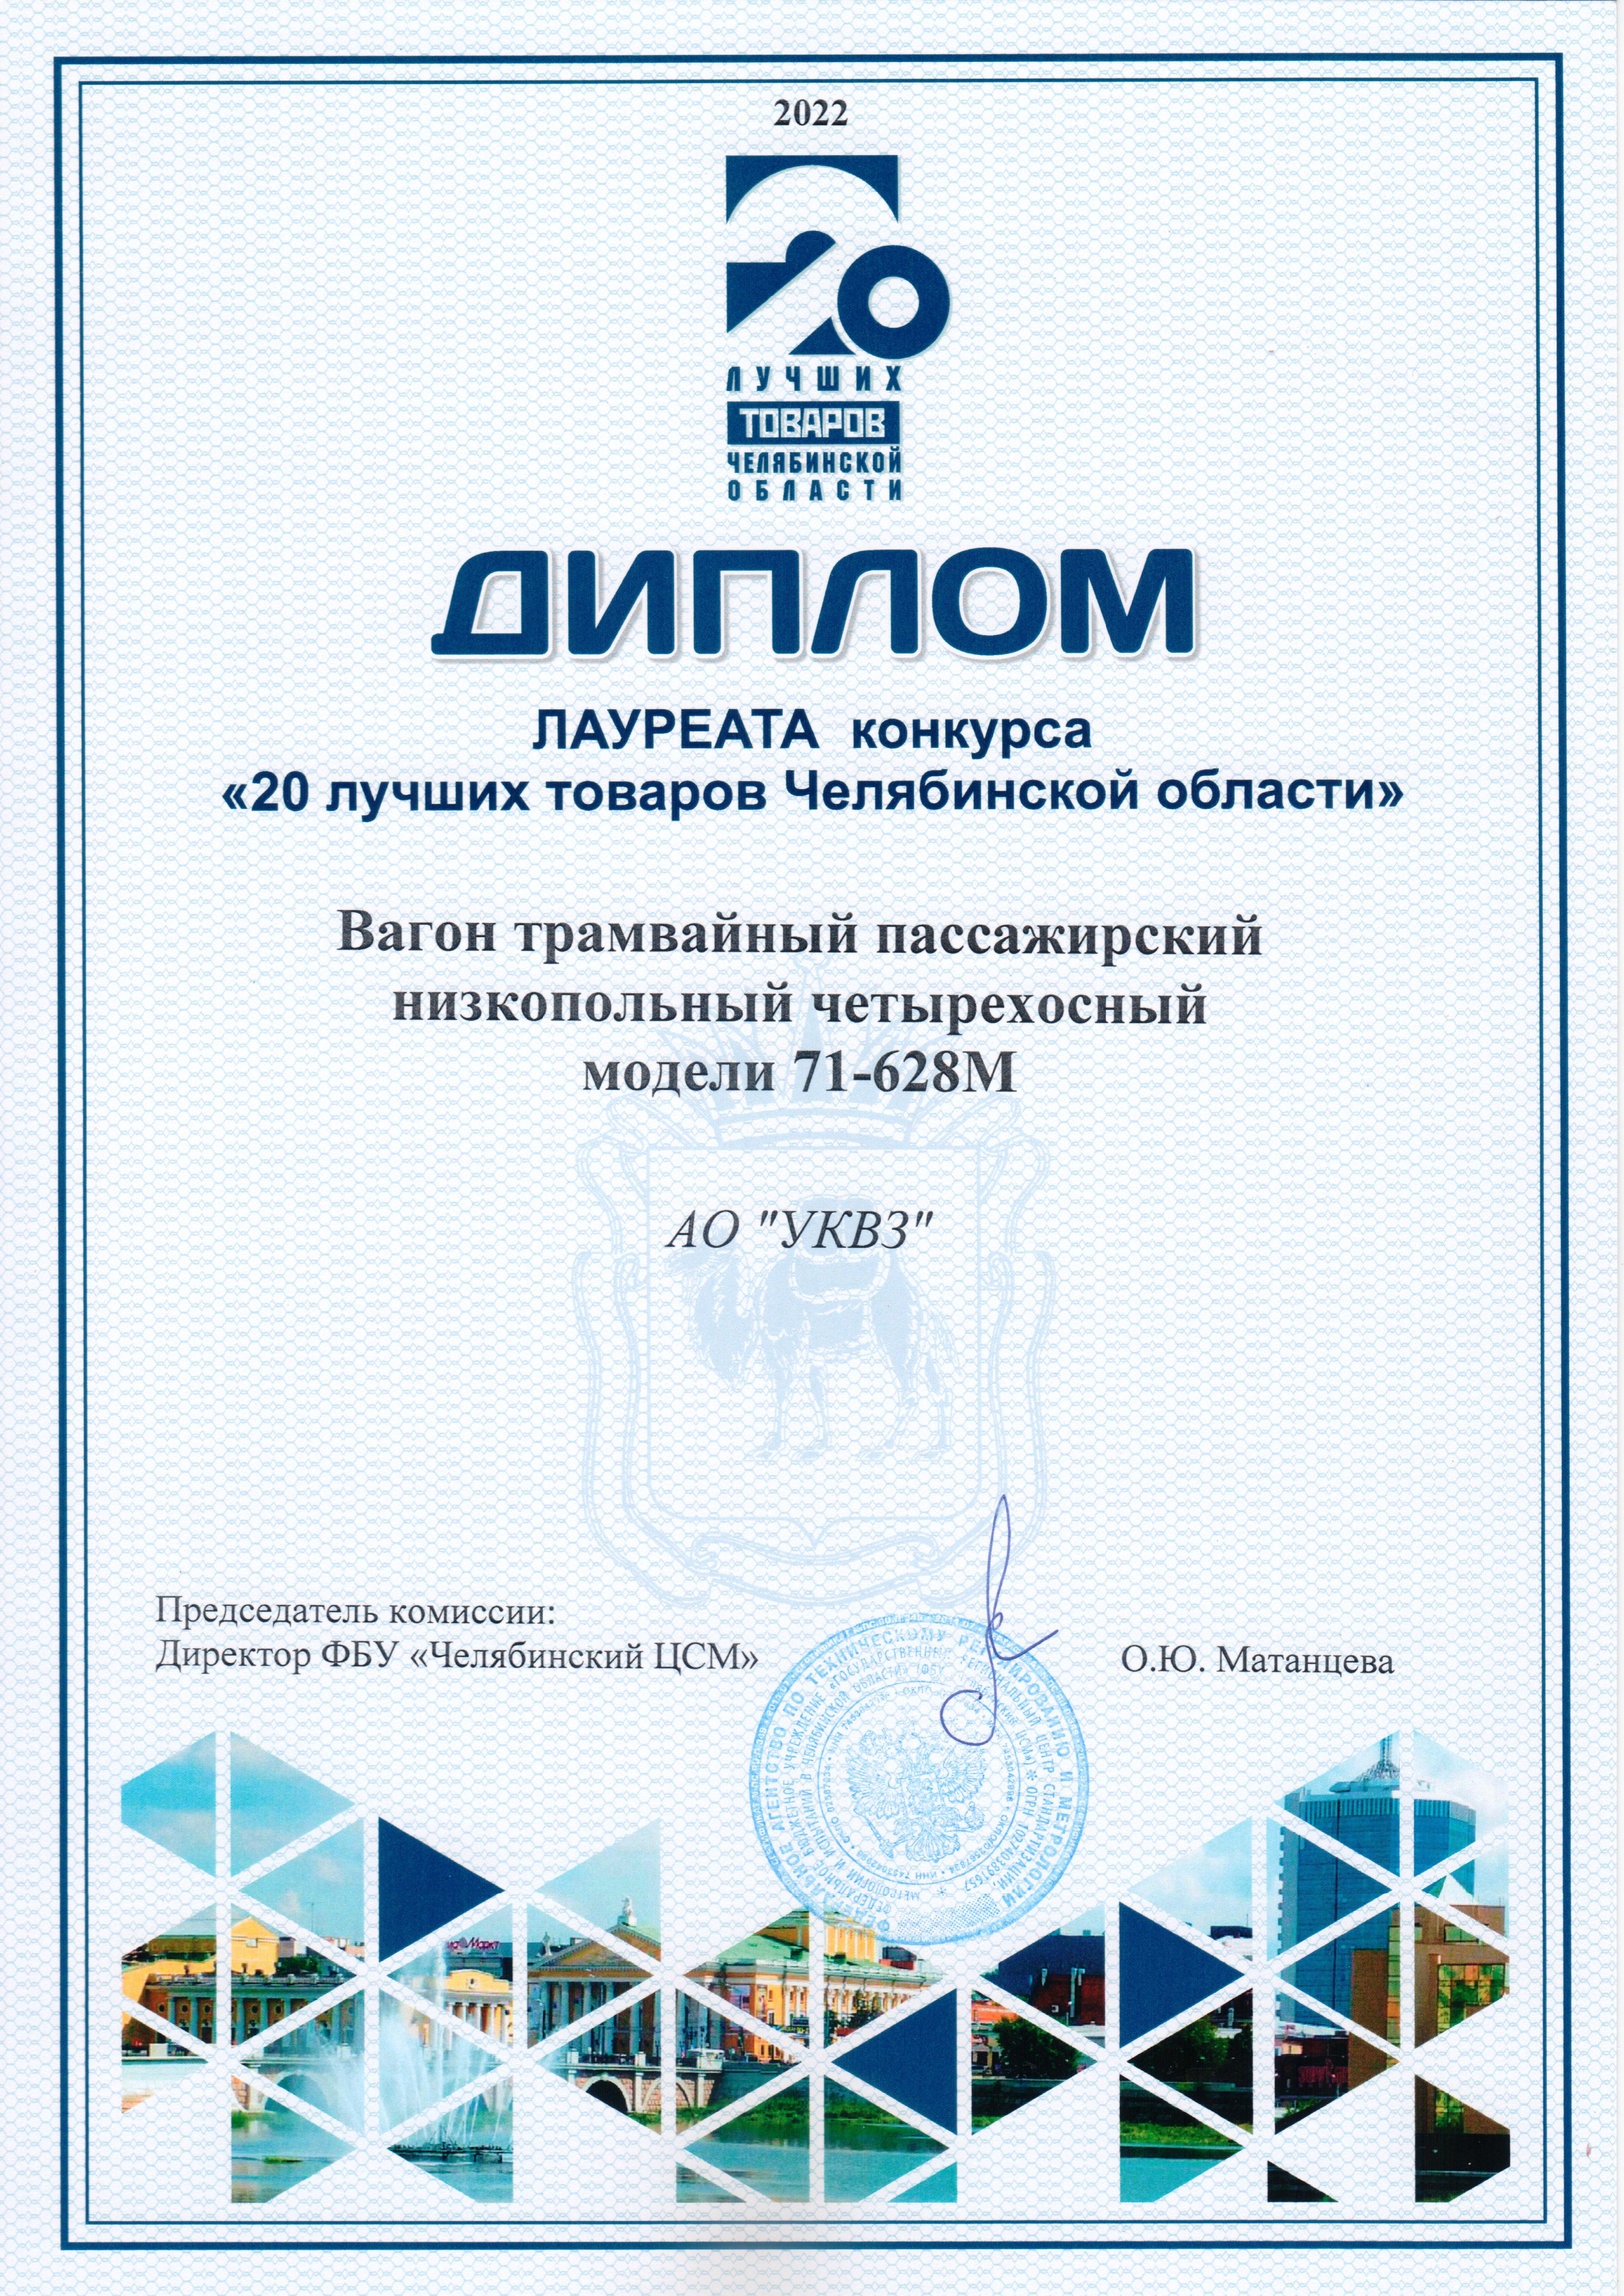 УКВЗ признан лауреатом регионального этапа конкурса «20 лучших товаров Челябинской области» 